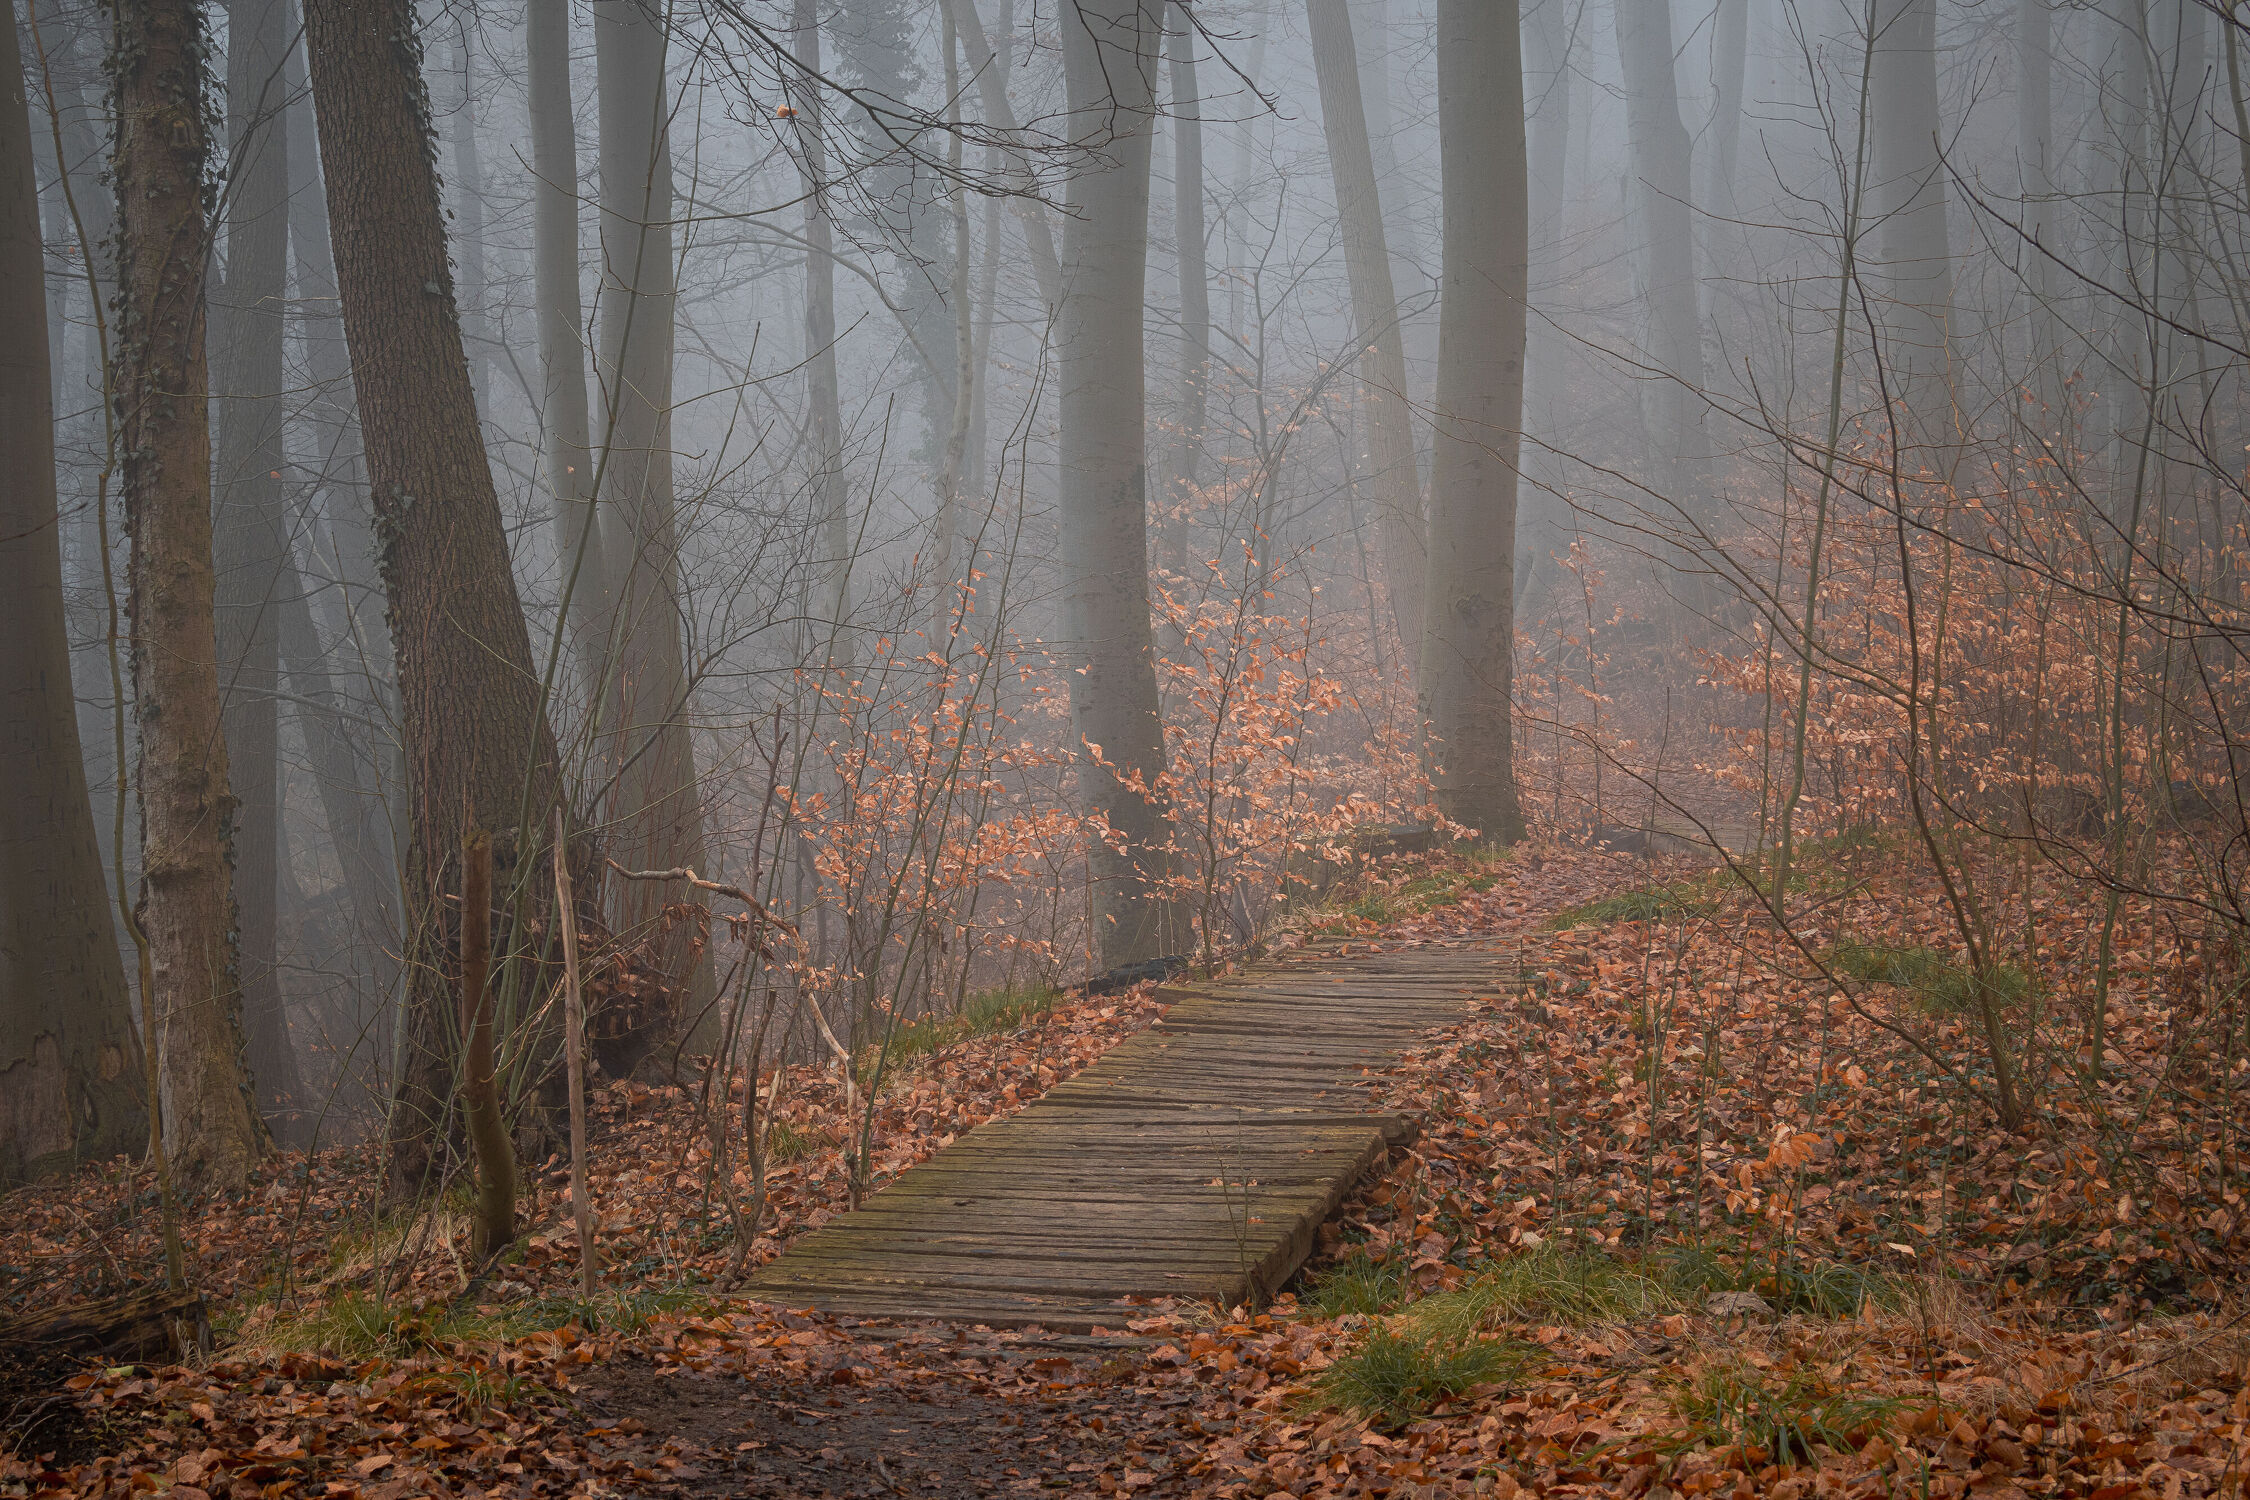 Bild mit Frühling, Nebel, Wald, Waldweg, Landschaft, See, Wanderweg, Buchenwald, frühjahr